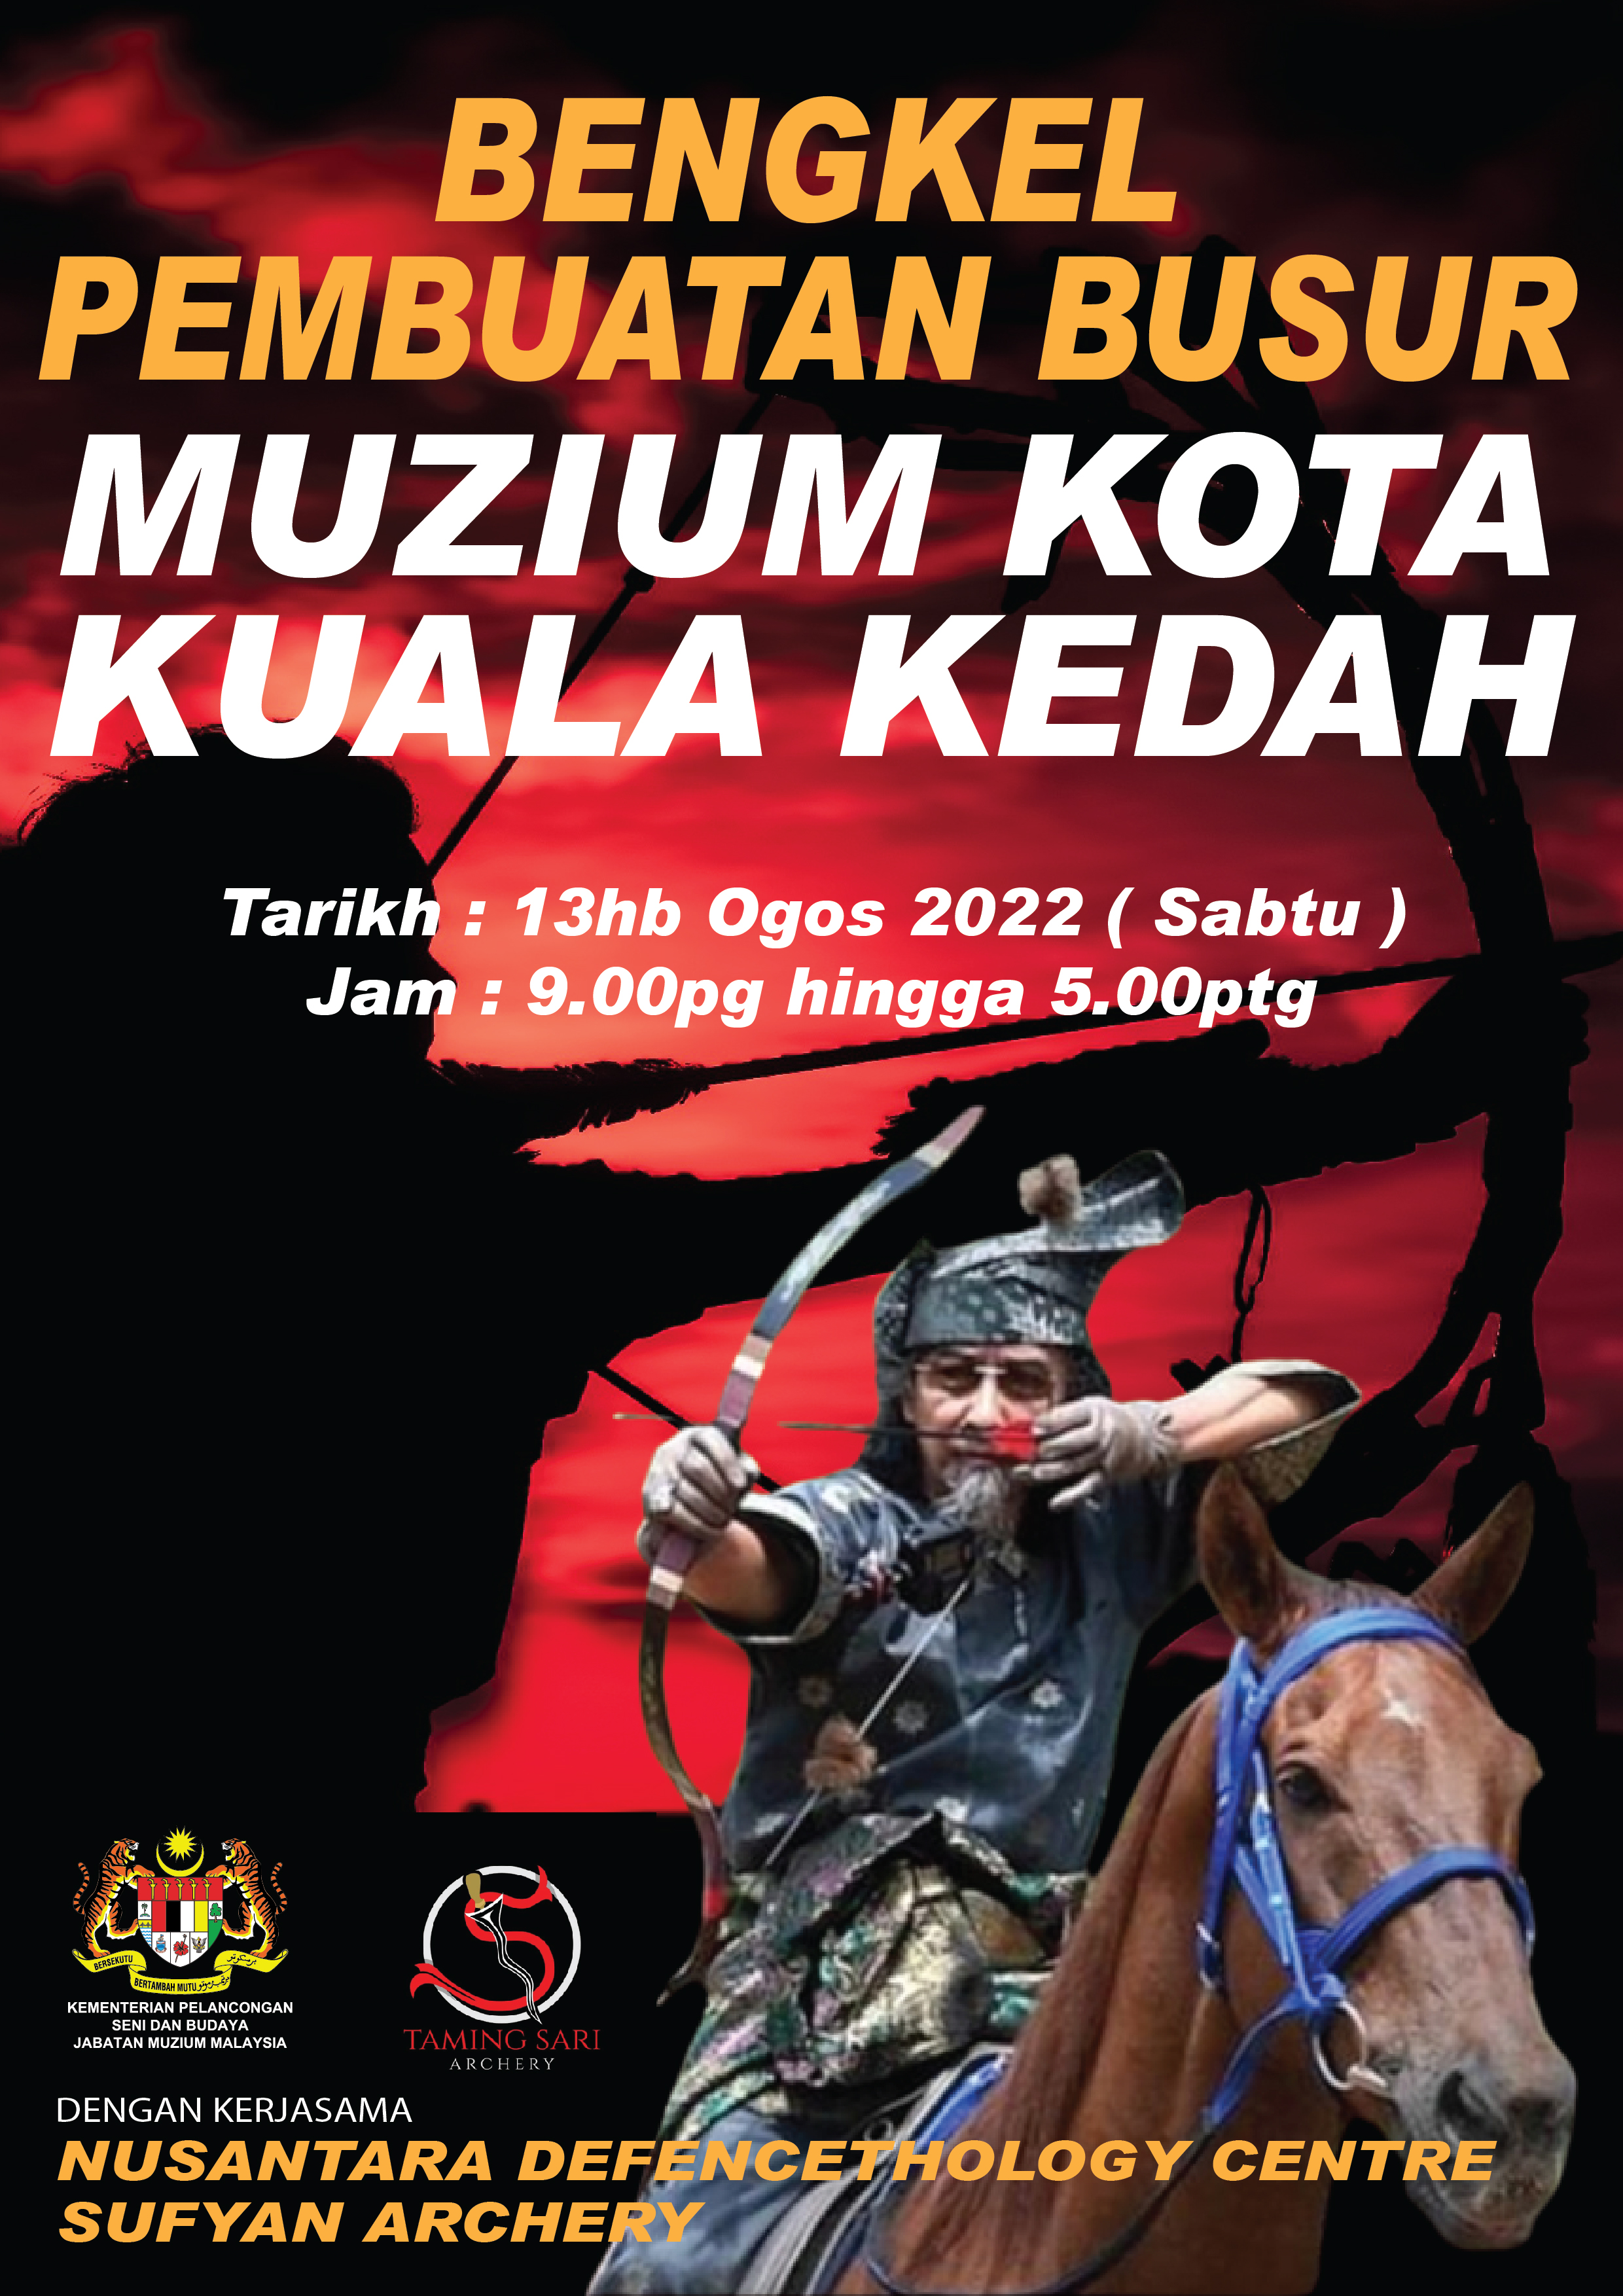 Bengkel Pembuatan Busur di Muzium Kota Kuala Kedah